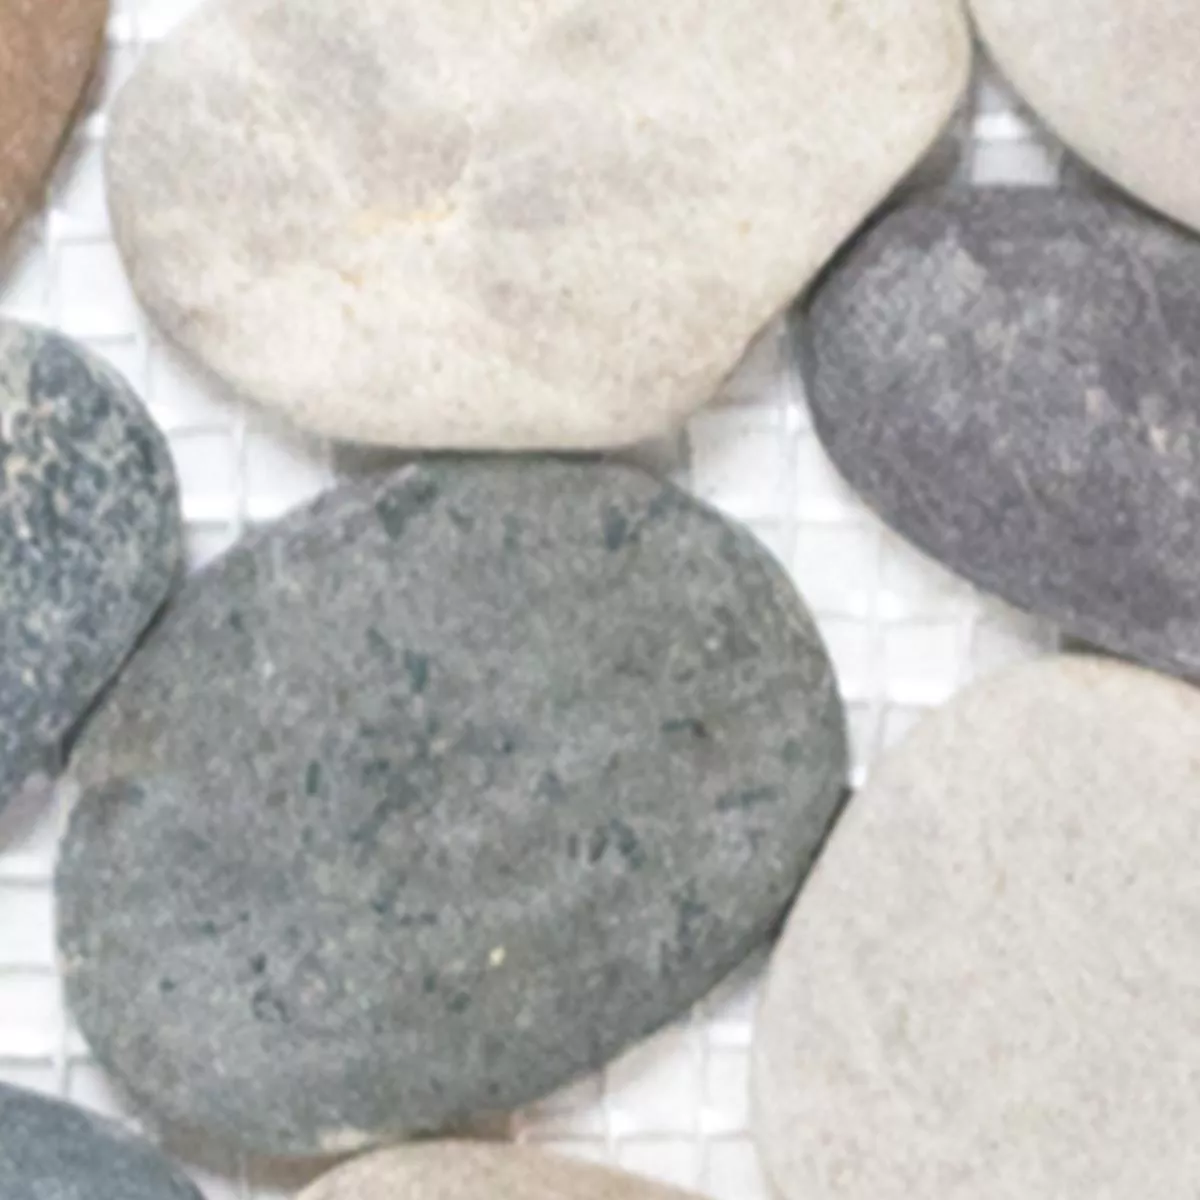 Sample Mosaic Tiles River Pebbles Natural Stone Doha